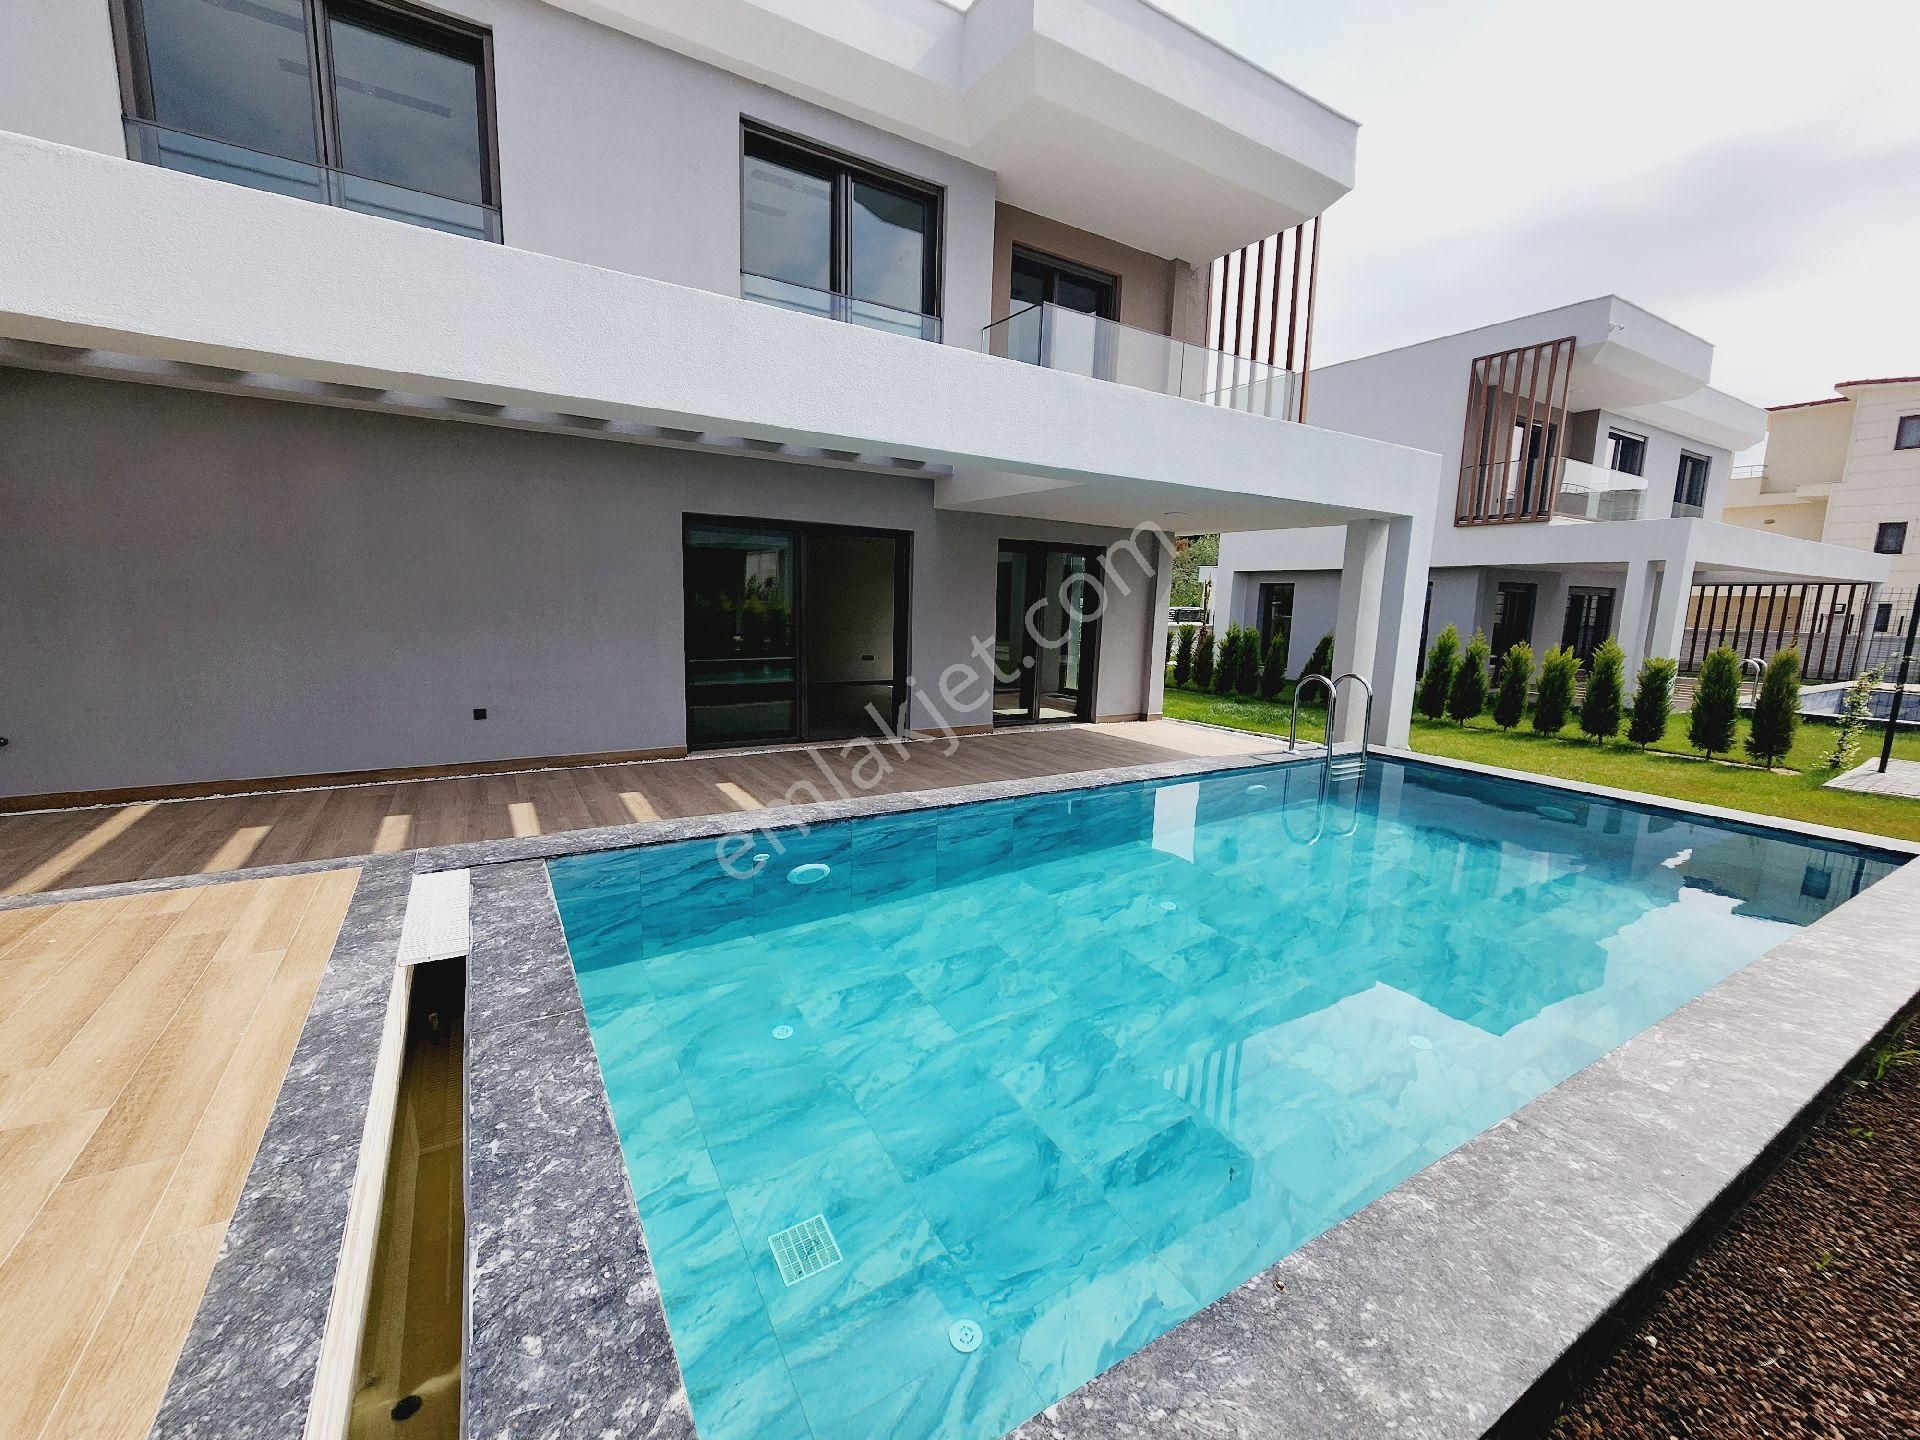 Kuşadası Güzelçamlı Satılık Villa Güzelçamlı satılık plaja 400 metre harika villa